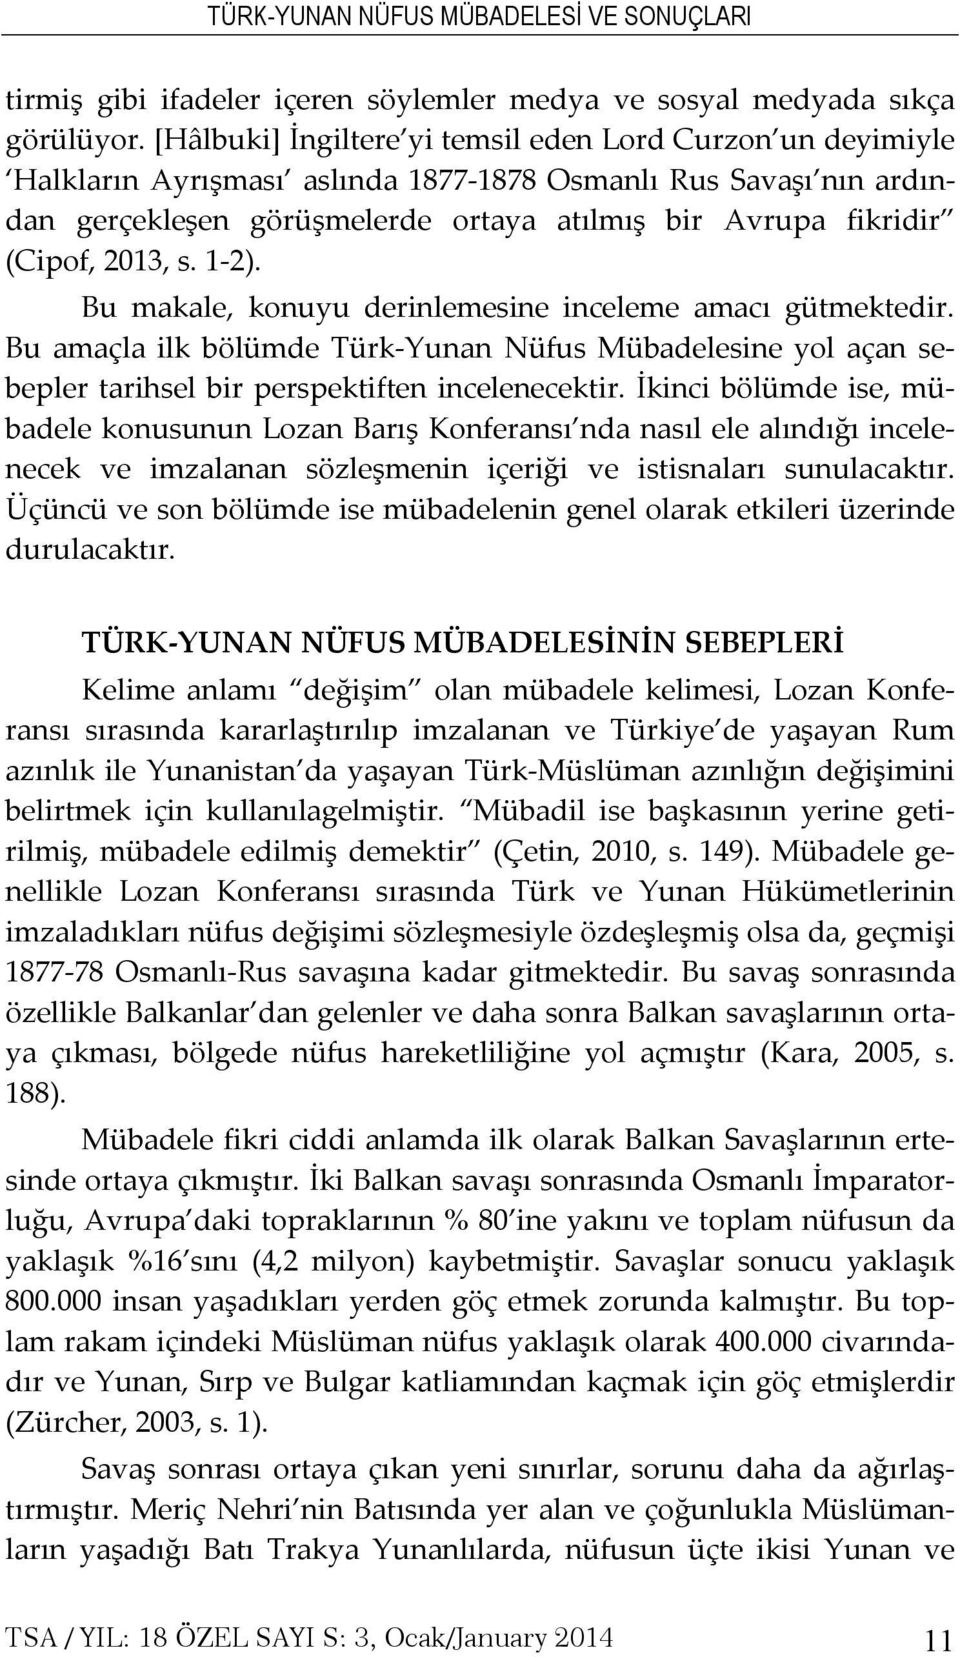 2013, s. 1-2). Bu makale, konuyu derinlemesine inceleme amacı gütmektedir. Bu amaçla ilk bölümde Türk-Yunan Nüfus Mübadelesine yol açan sebepler tarihsel bir perspektiften incelenecektir.